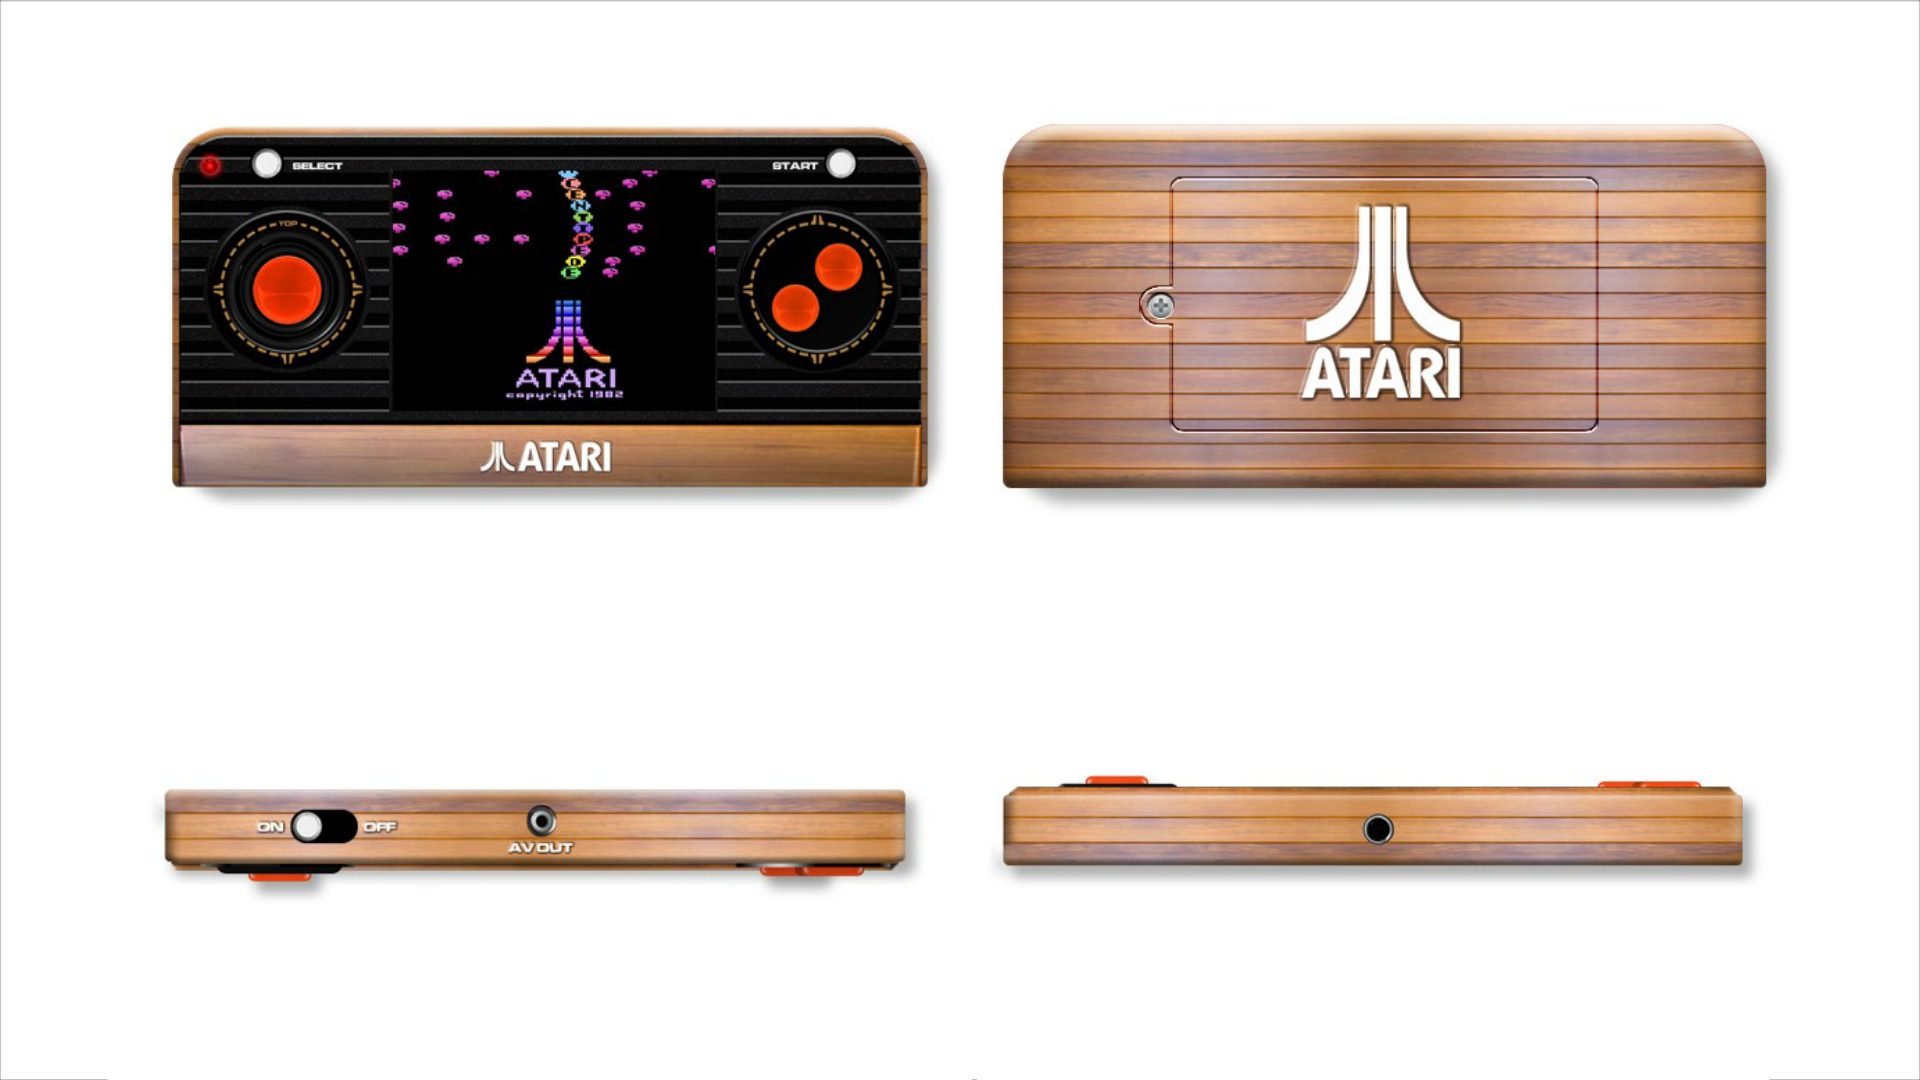 The Atari 2600 Returns as Compact Handheld with 50 Classic Atari Games Built-In